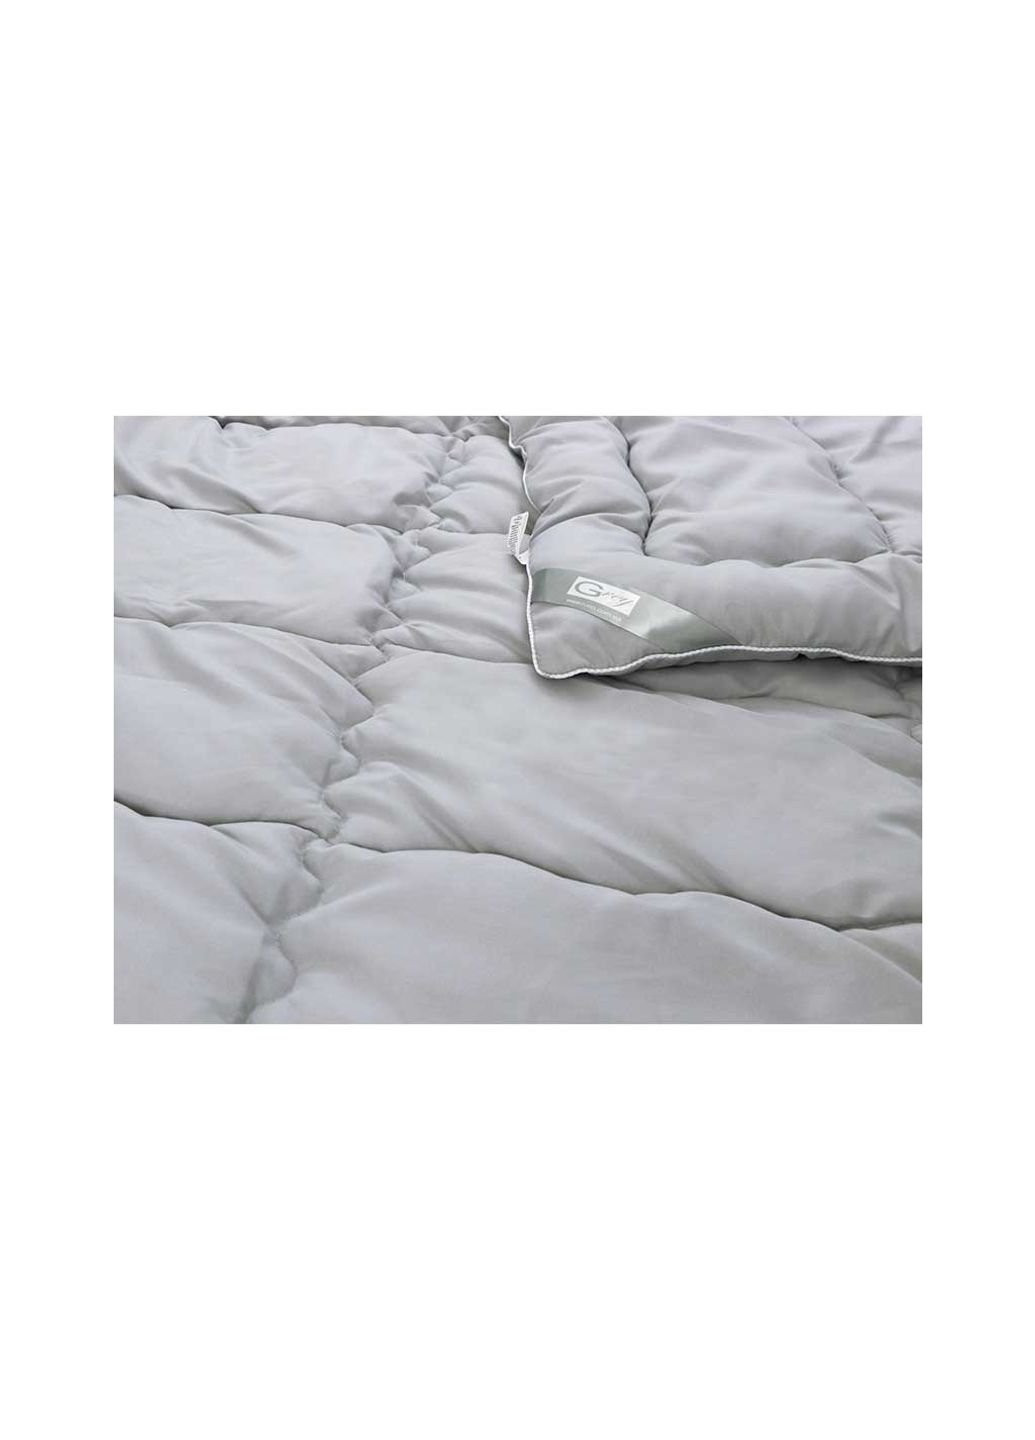 Одеяло силиконовое GREY 140х205 см (321.52GREY) Руно (254014918)